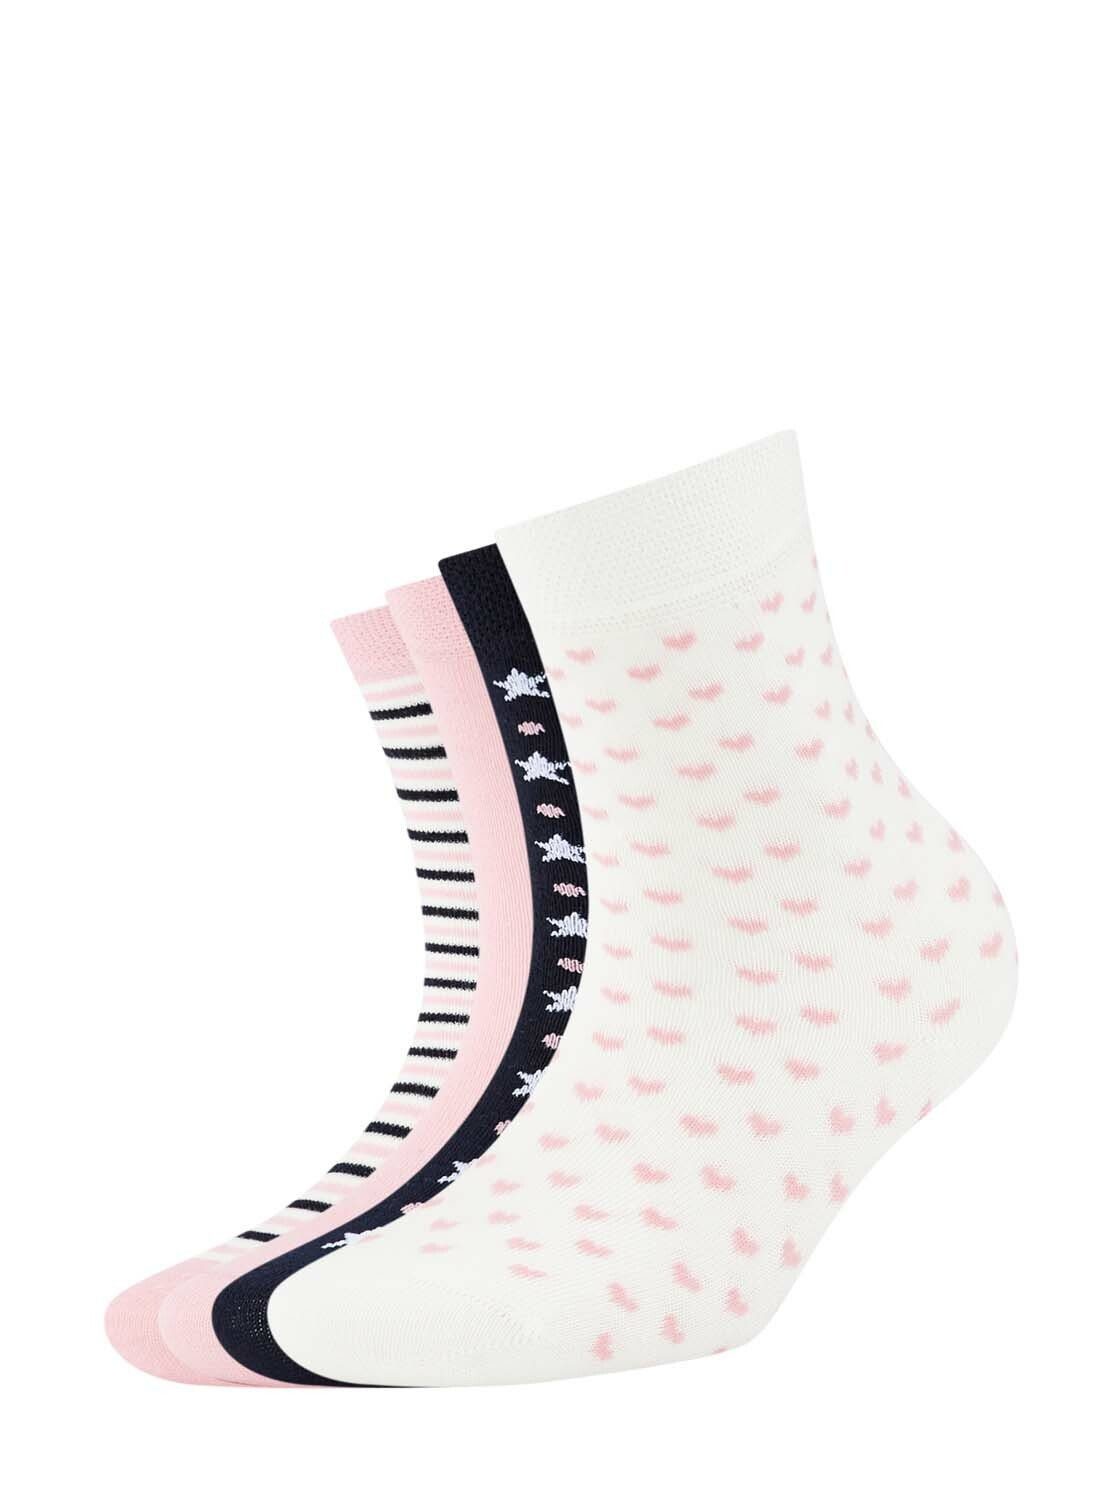 TOM TAILOR Basicsocken 4er Pack Girls Socken mit winterlichem Design (im Viererpack)